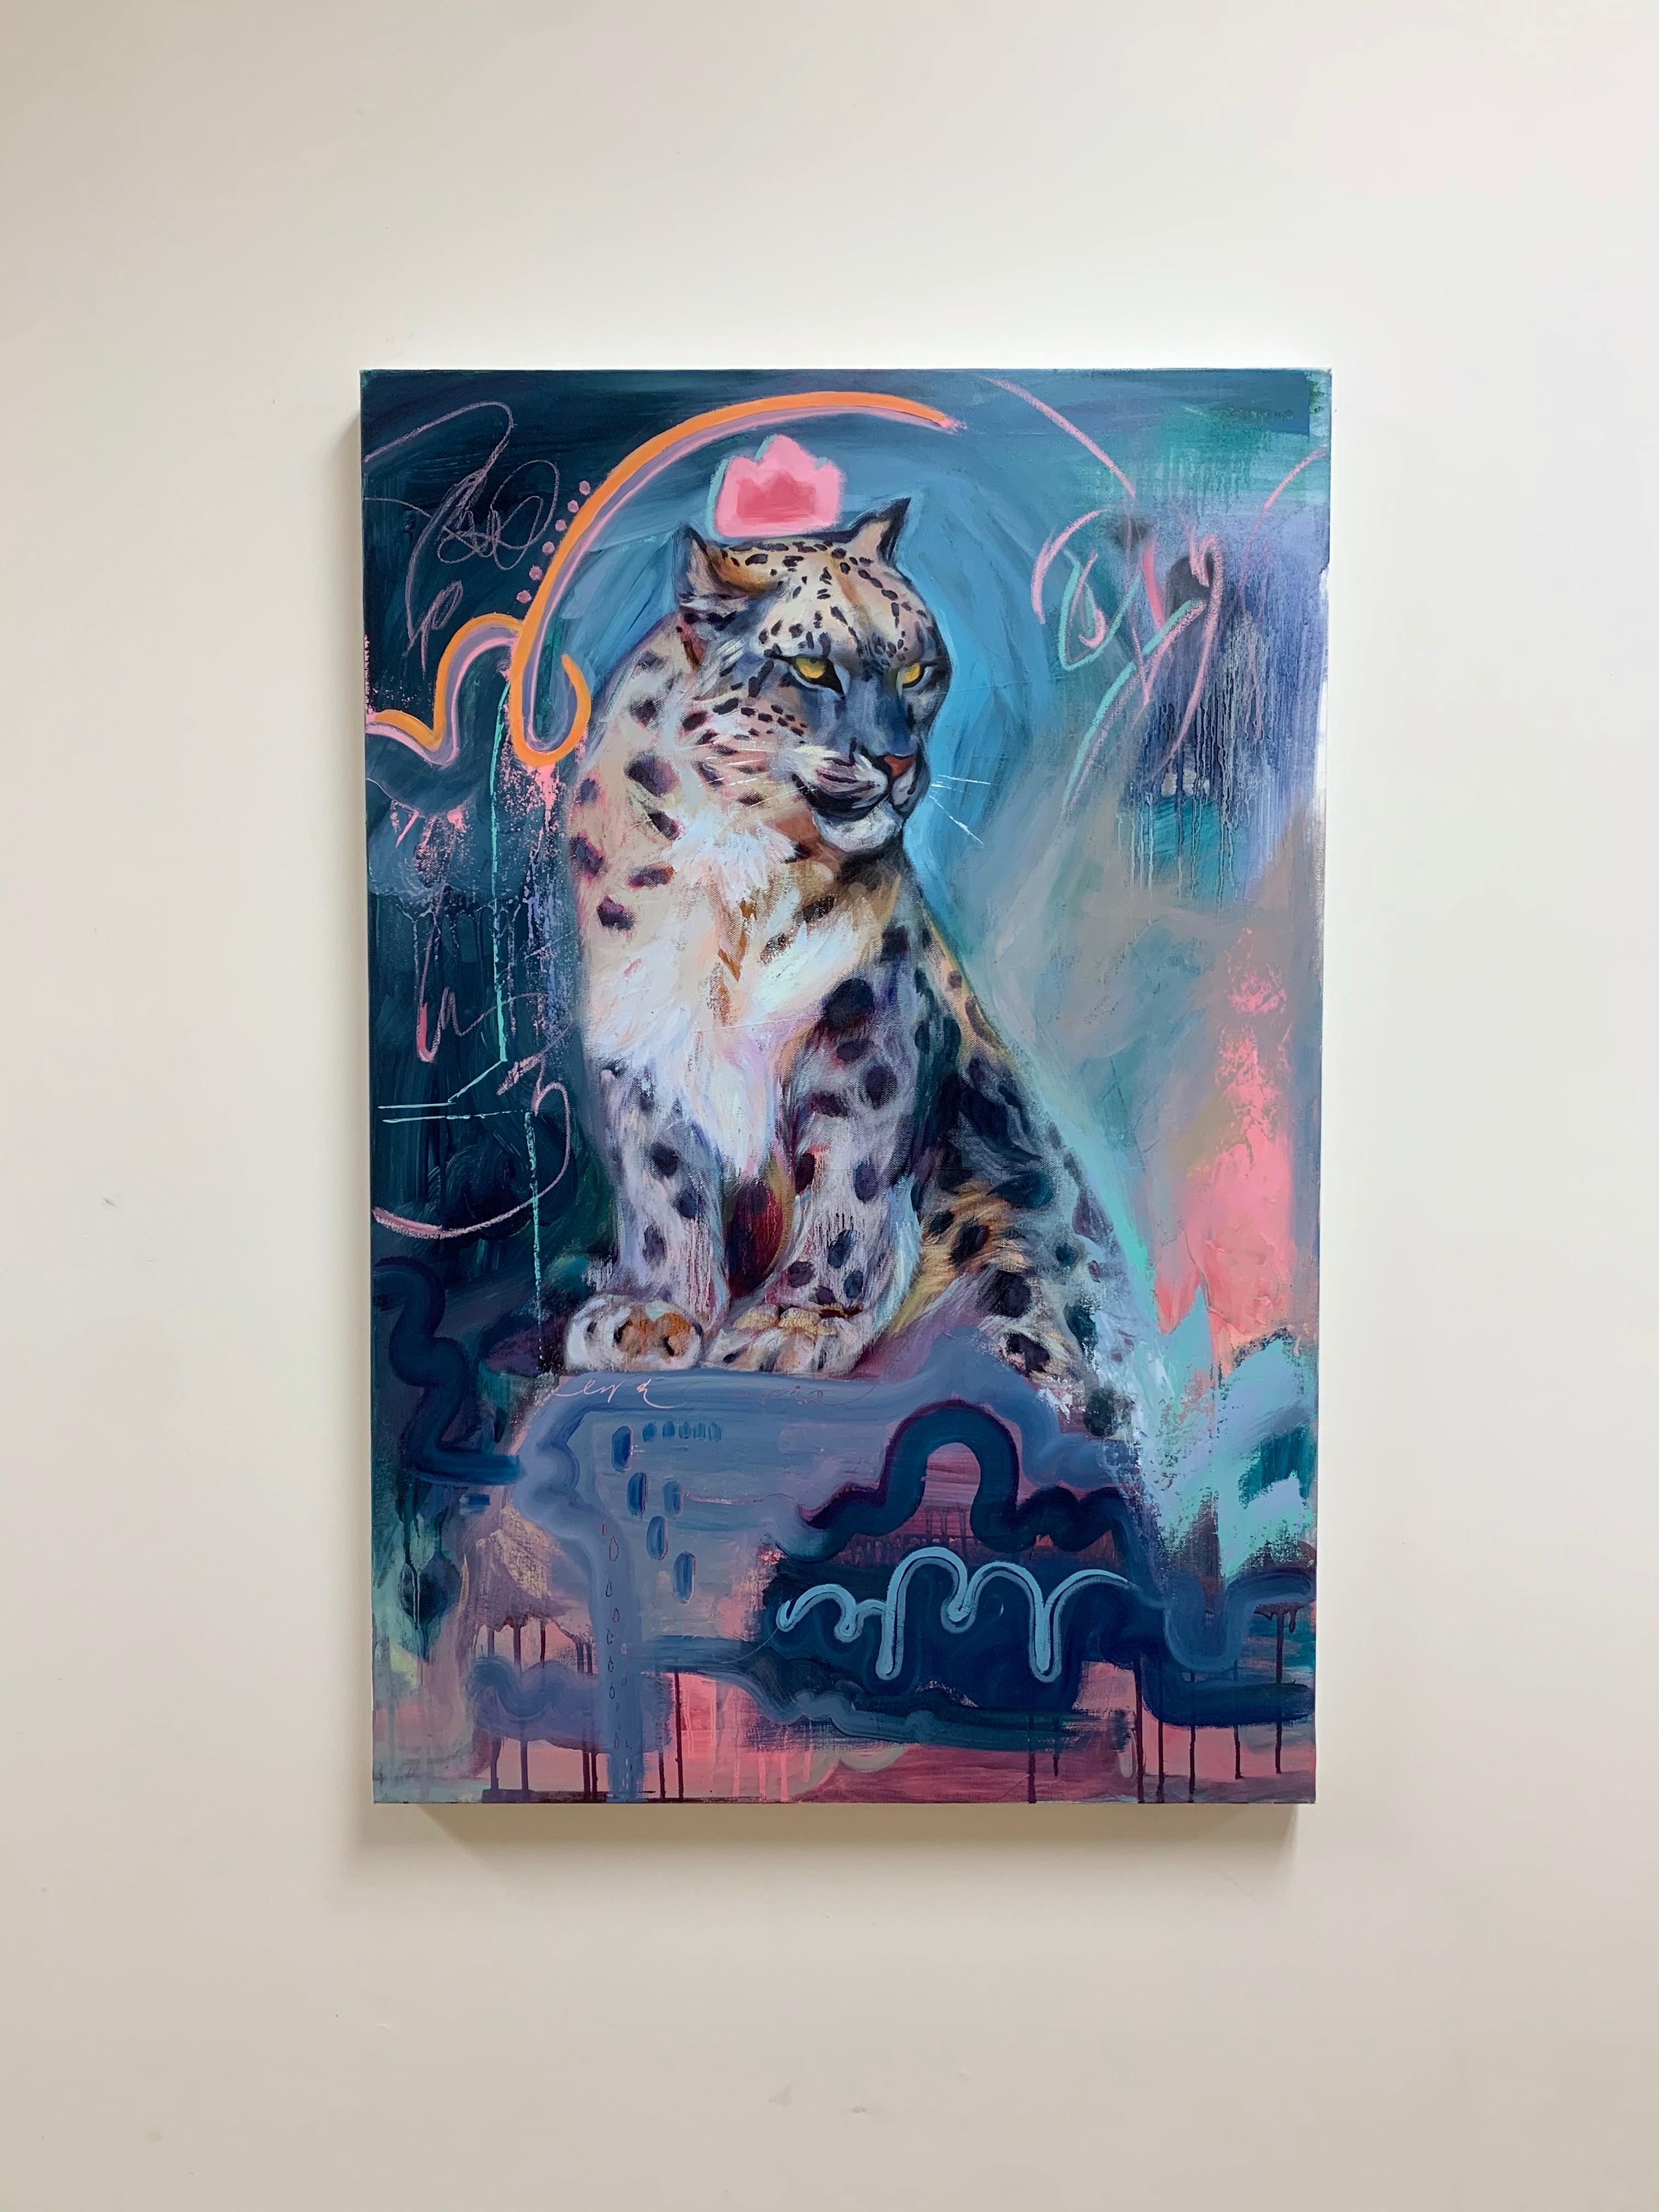 <p>Kommentare des Künstlers<br /> Ein Porträt eines kräftigen Leoparden im Pop-Art-Stil, umgeben von leuchtenden, lebhaften Farben und fließenden Pinselstrichen. Die Großkatze starrt in die Ferne, ungestört von ihrer Umgebung. Die Künstlerin Miranda